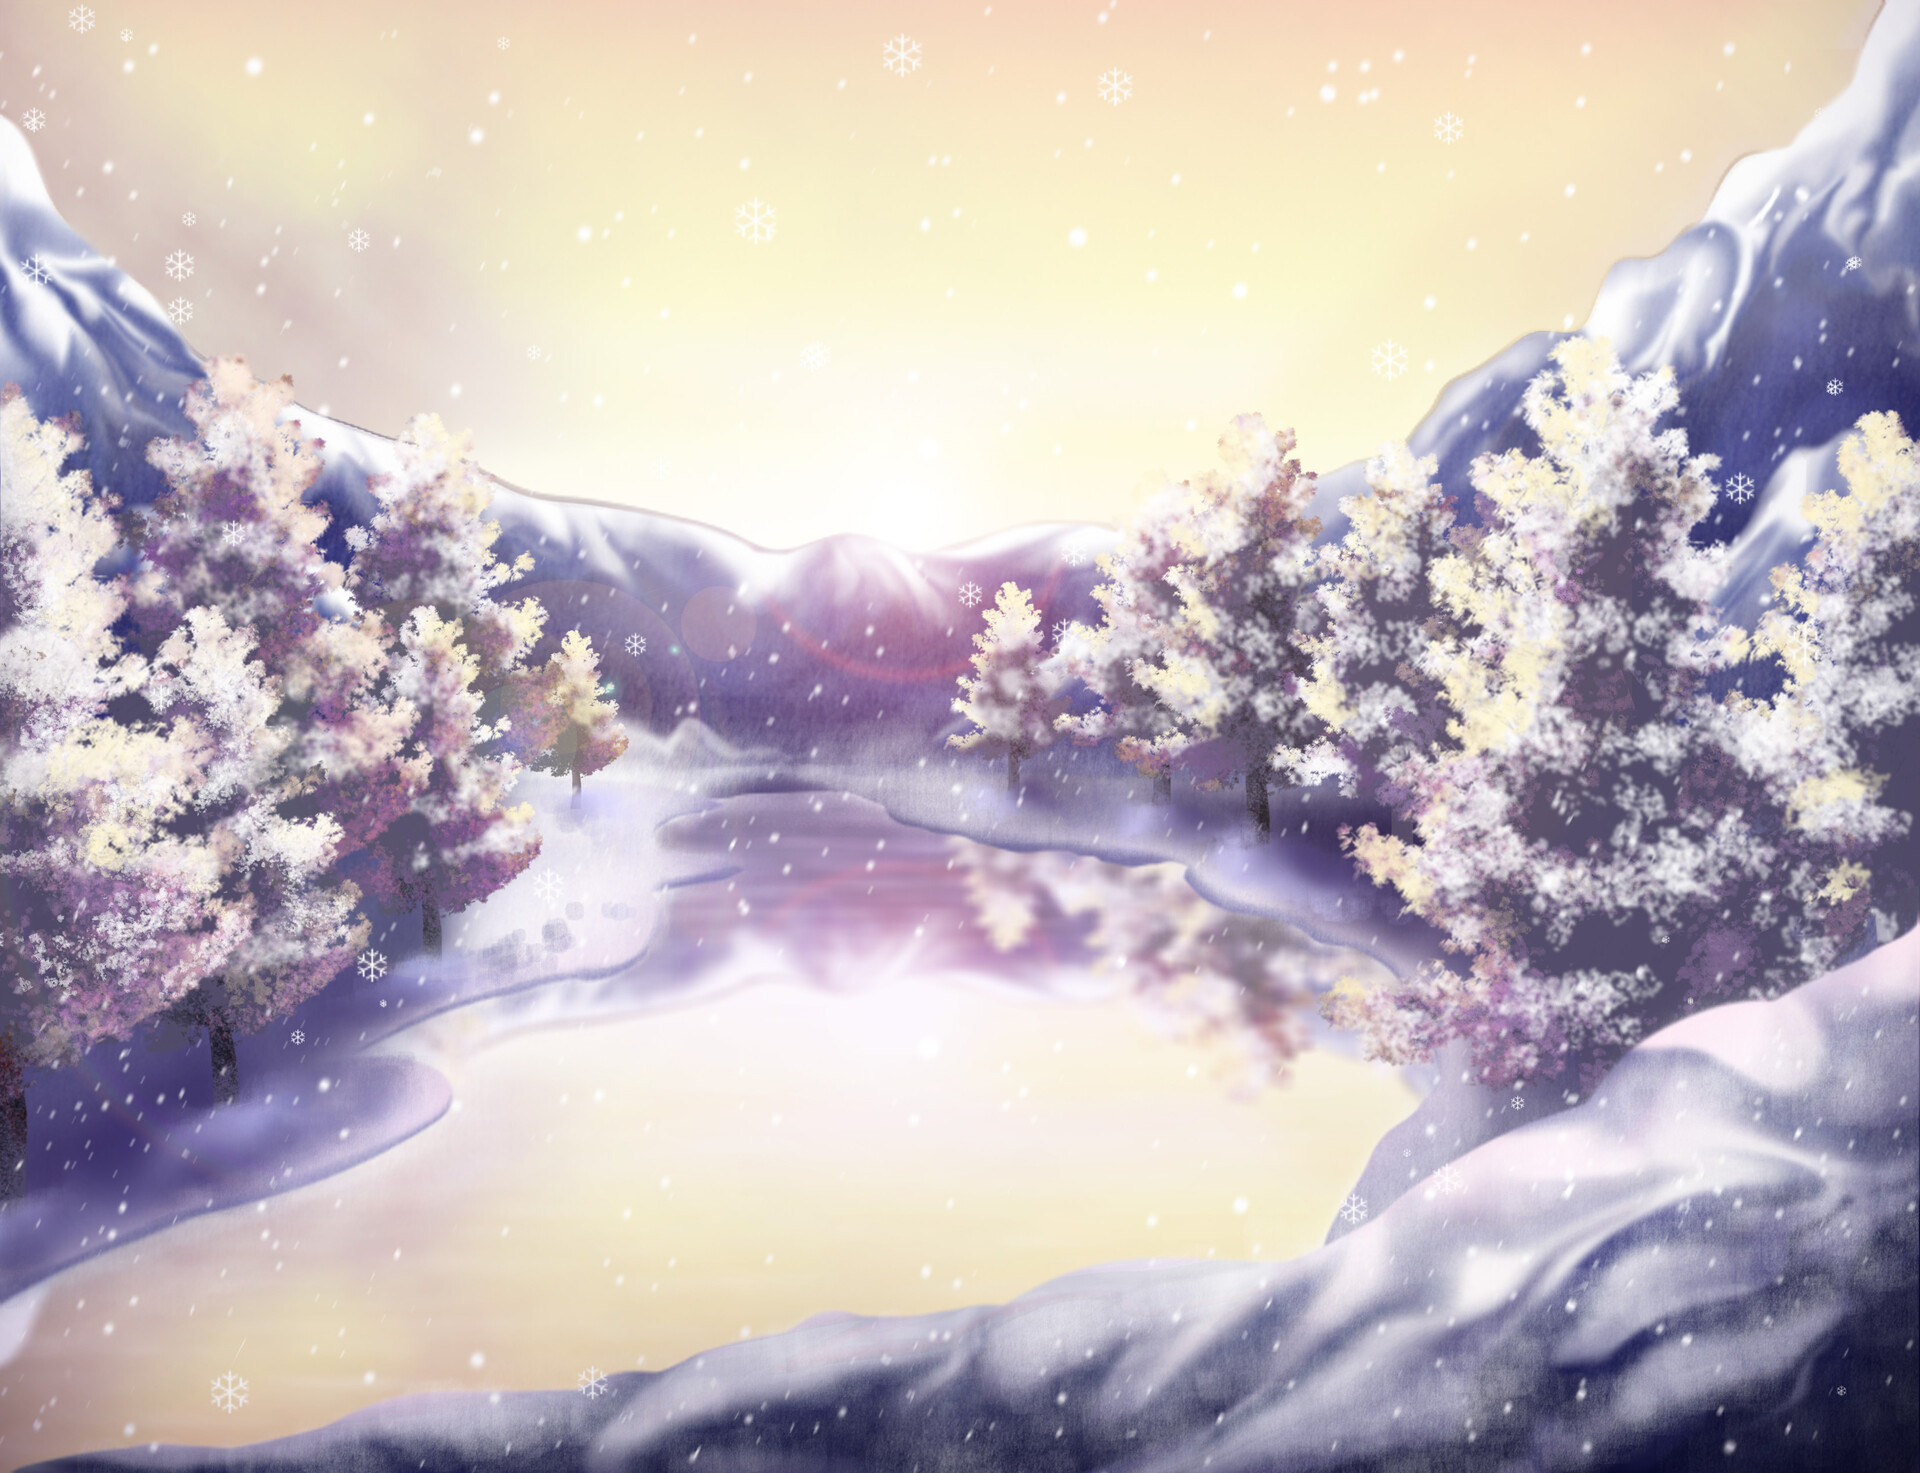 ArtStation - Winter - Illustration